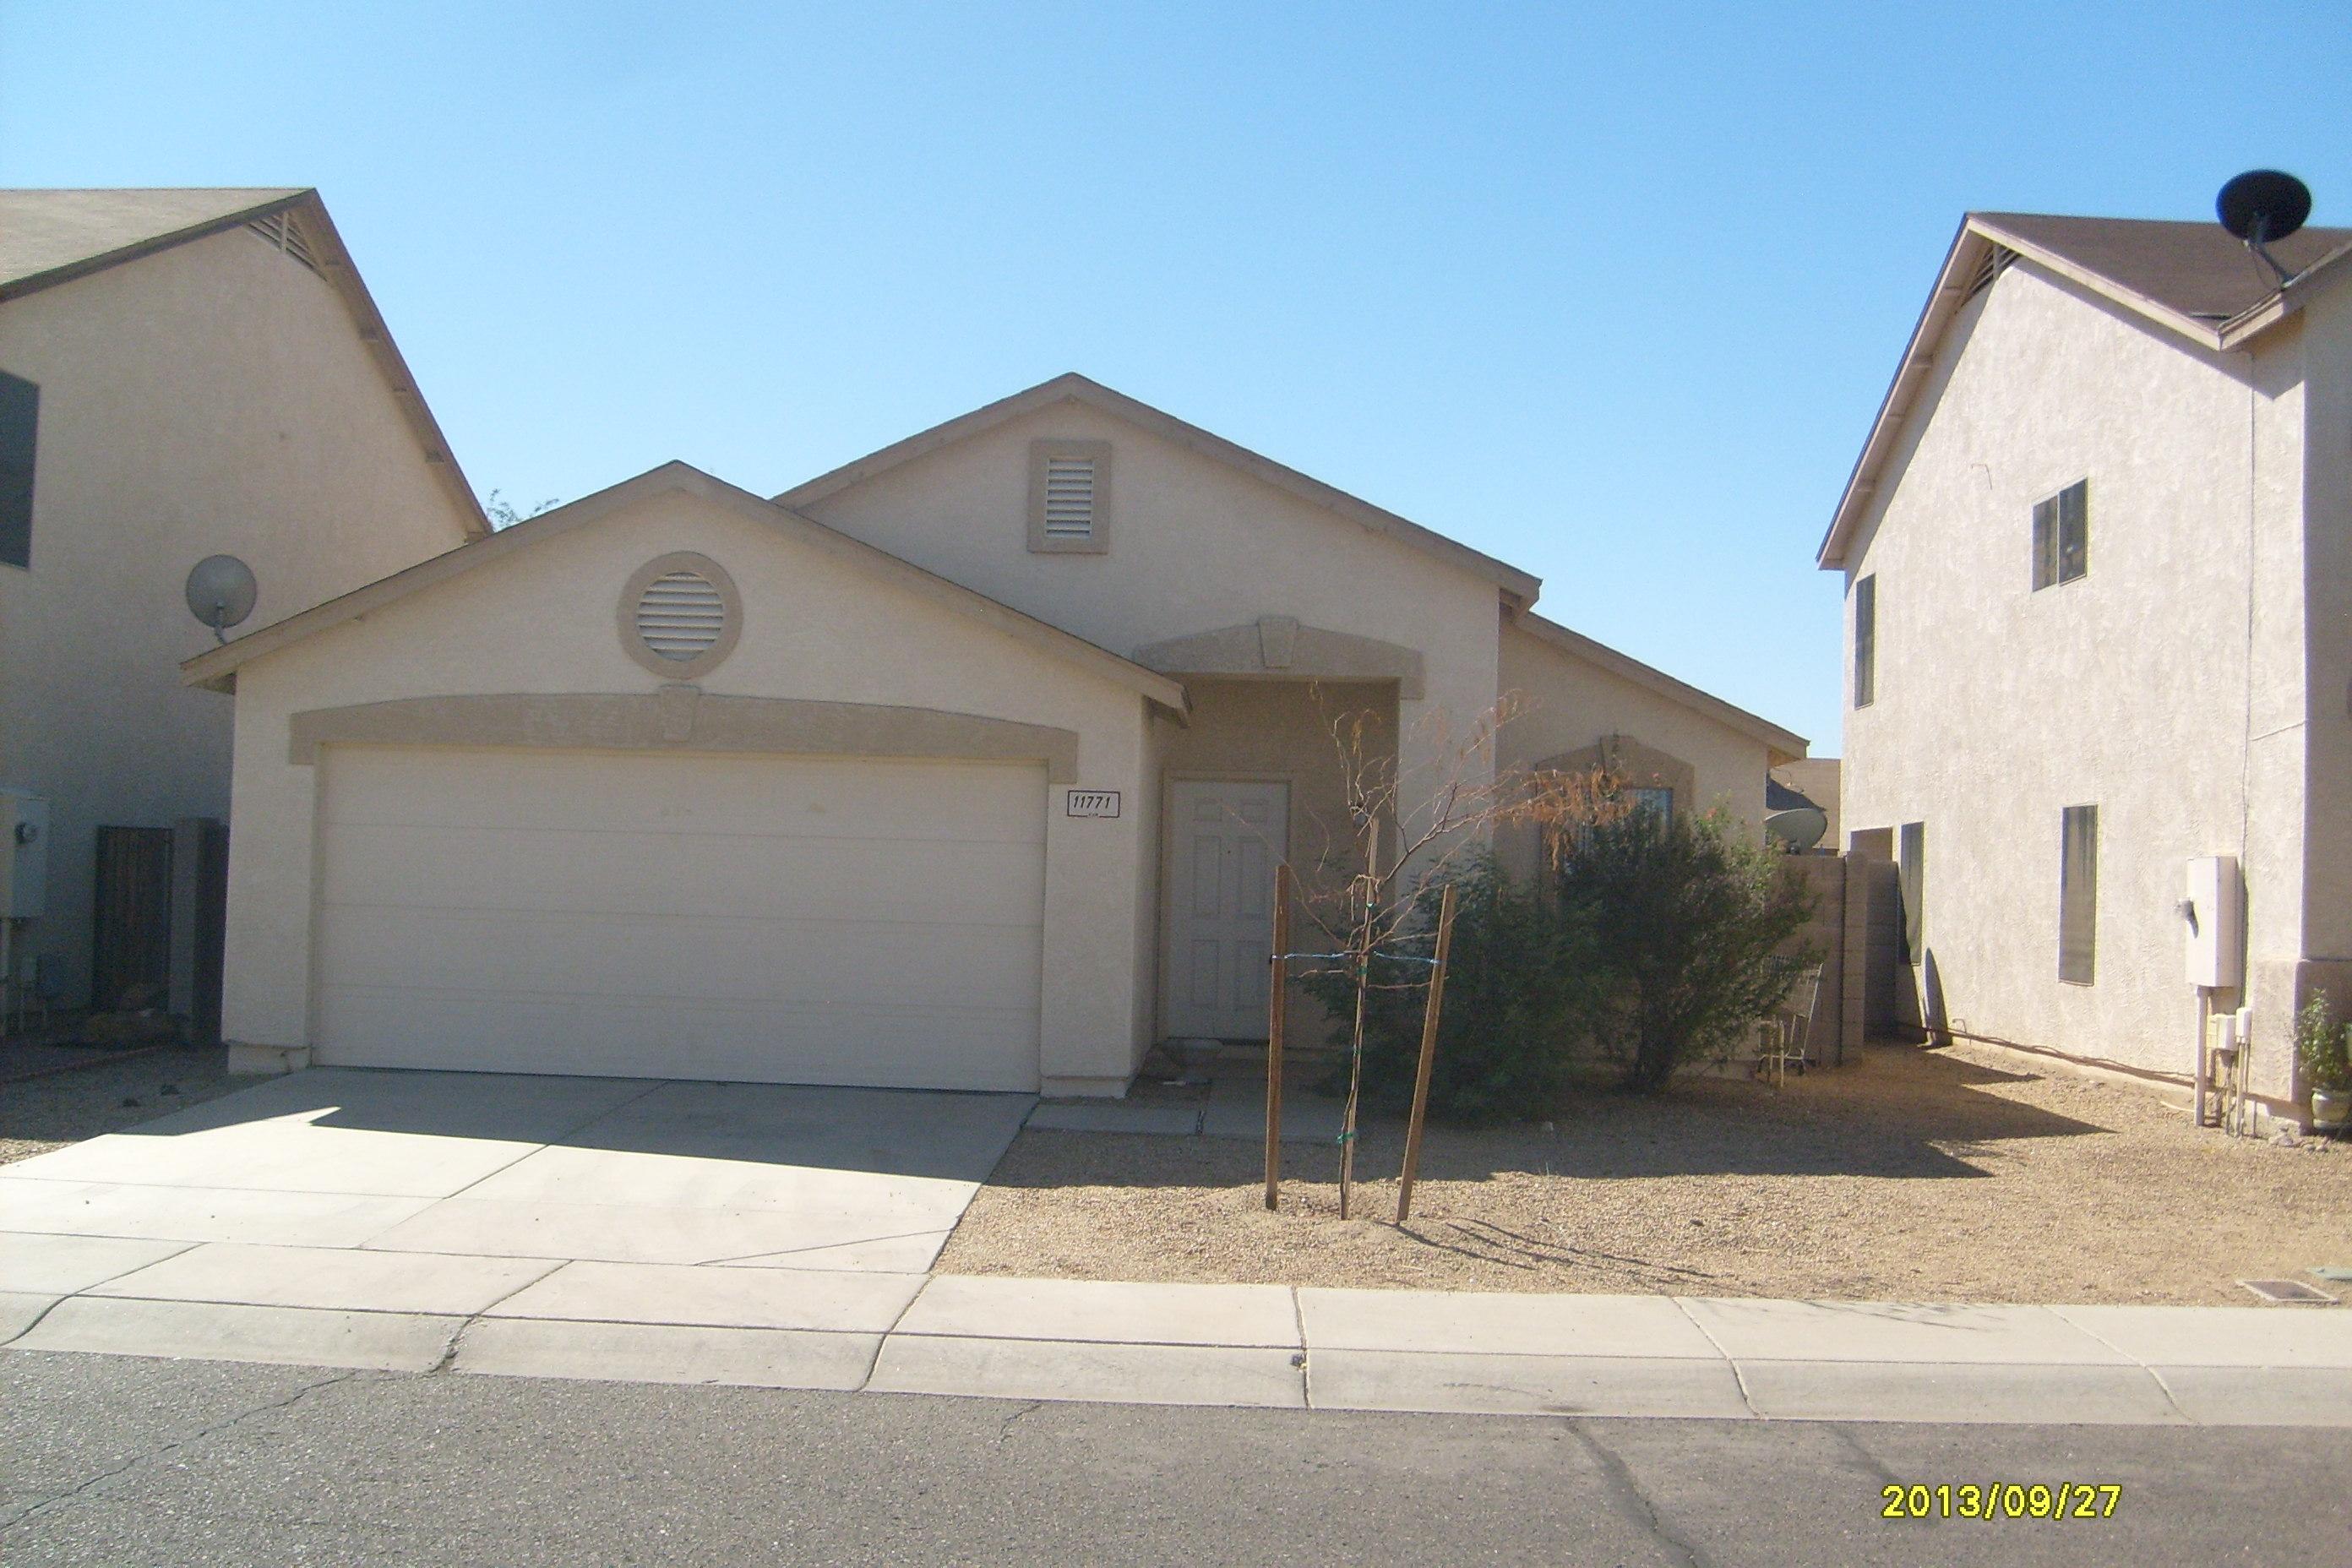  11771 West Windrose Ave, El Mirage, AZ photo